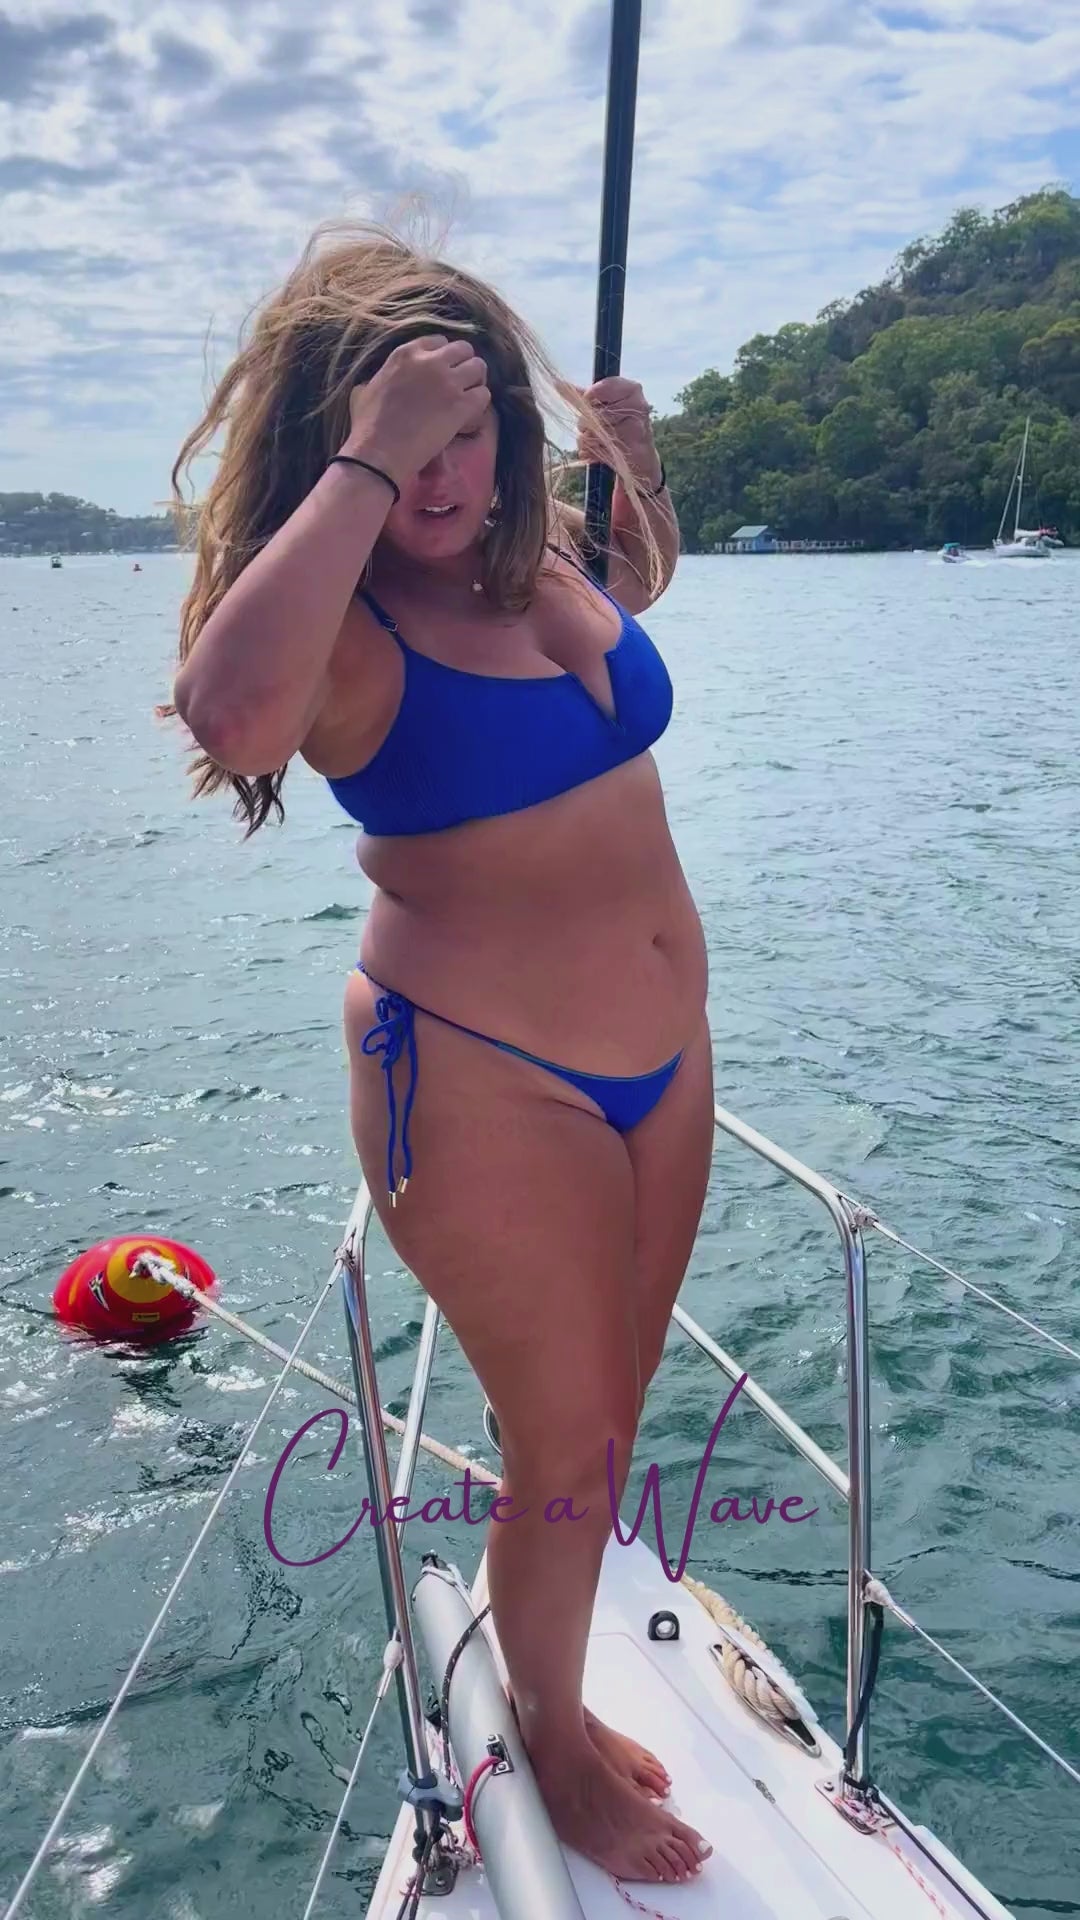 Trend Ripple_Kayles Renee Swimwear_Blue Bikini set worn by woman on a boat